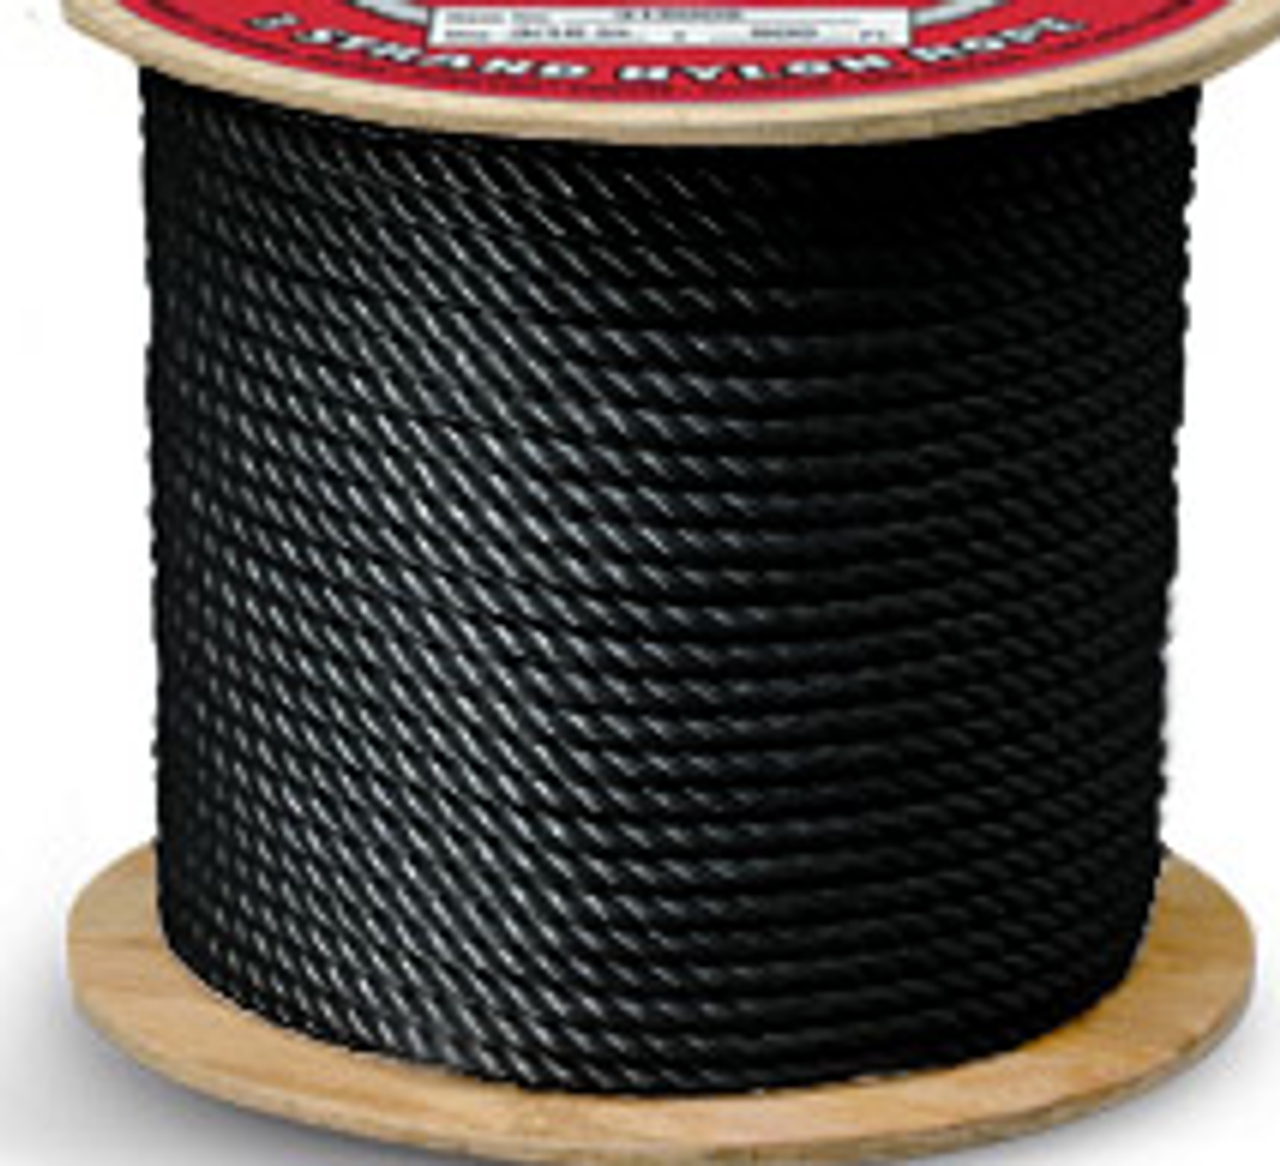 CWC Solid Braid Nylon Rope Spool, Black (3/16 x 3000' - 825 lbs